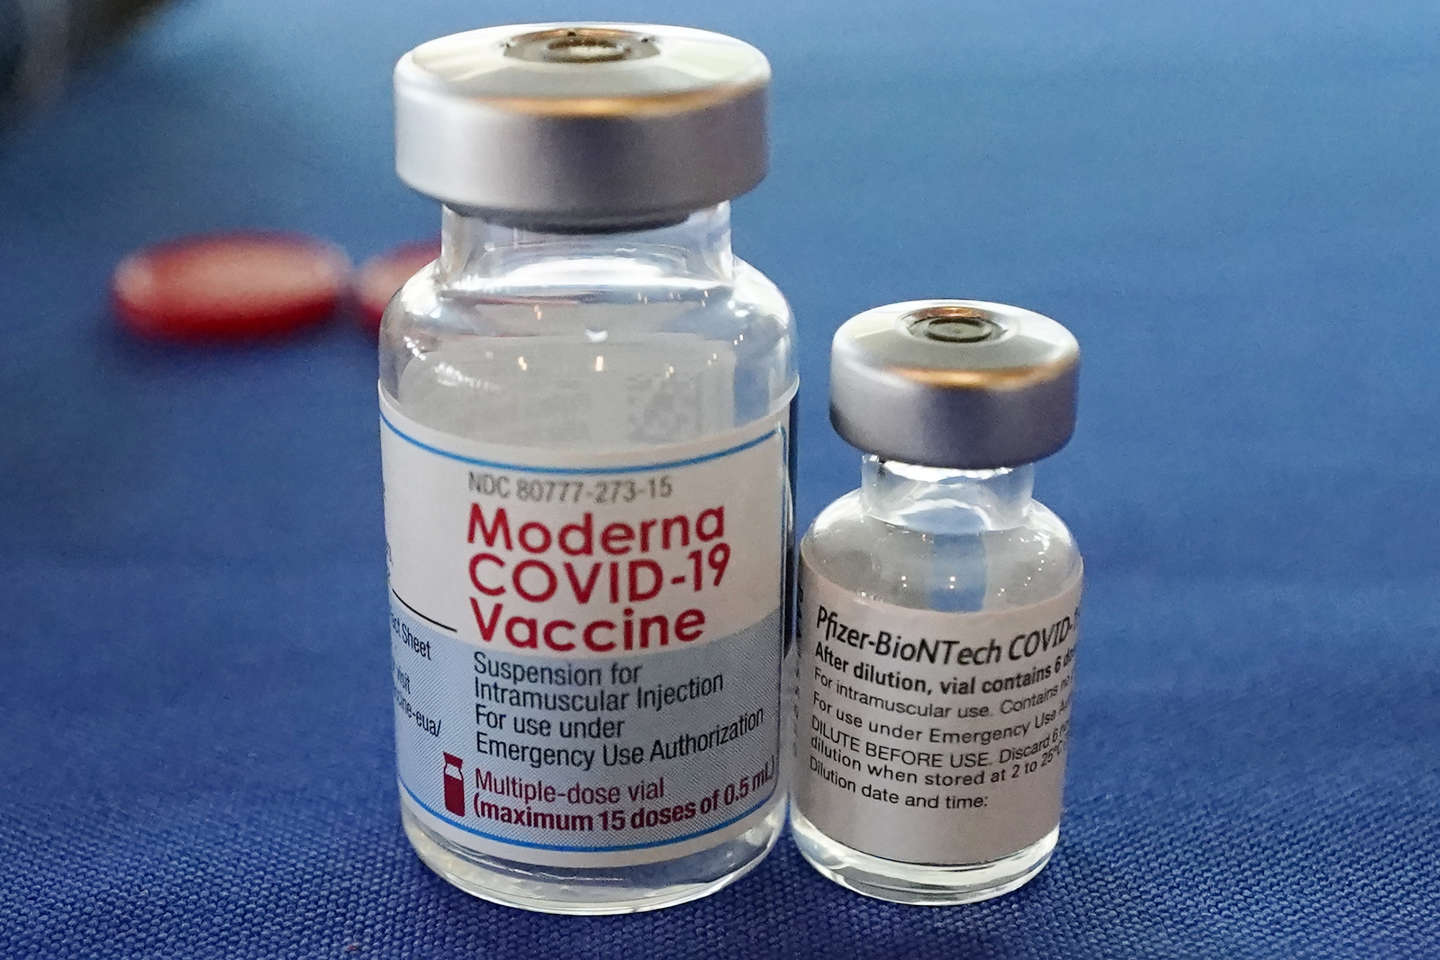 Covid-19 : Moderna porte plainte contre Pfizer-BioNTech pour violation de brevet concernant leur vaccin